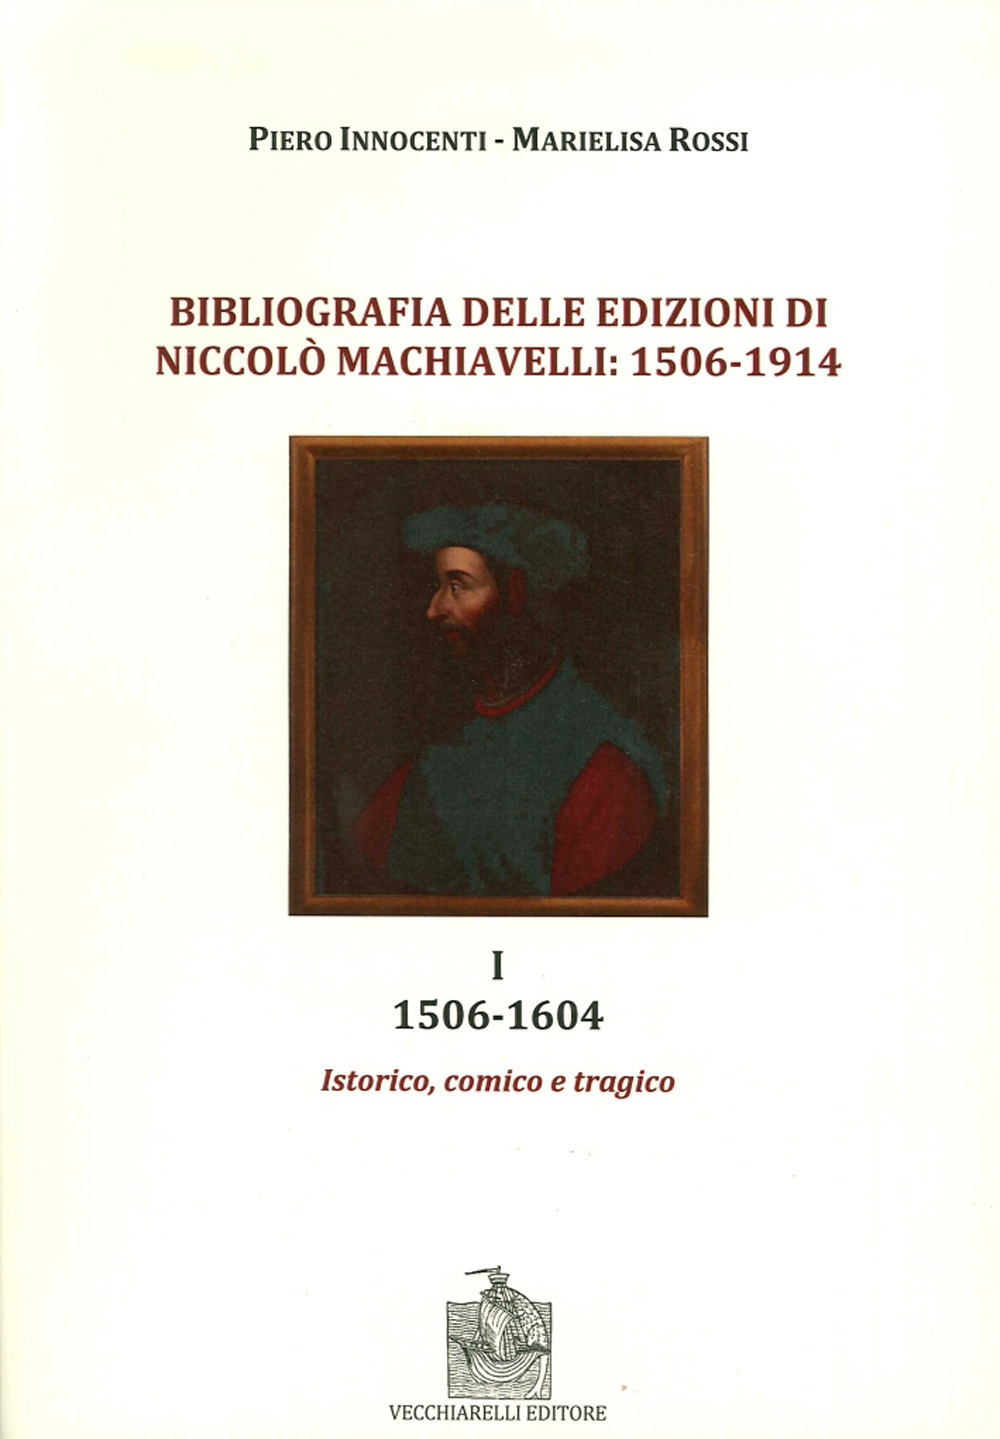 Bibliografia delle edizioni di Niccolò Machiavelli (1506-1914). Vol. 1: 1506-1604. Istorico, comico e tragico